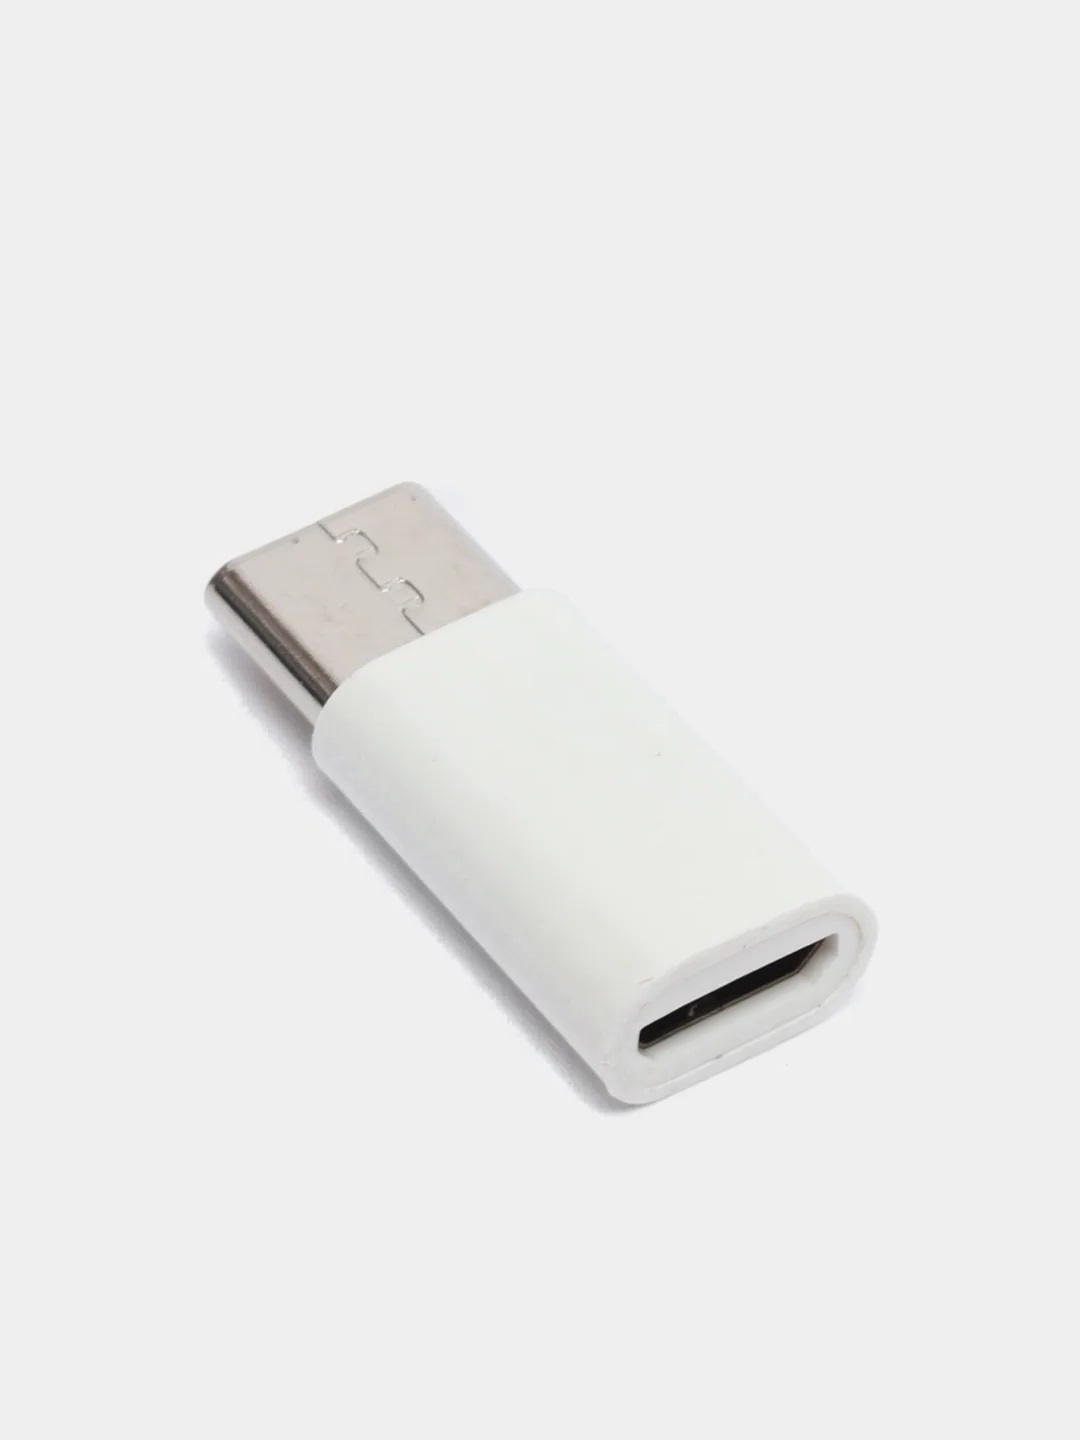 USB OTG кабель с одновременной зарядкой - YouTube | Электроника, Электронная схема, Кабель